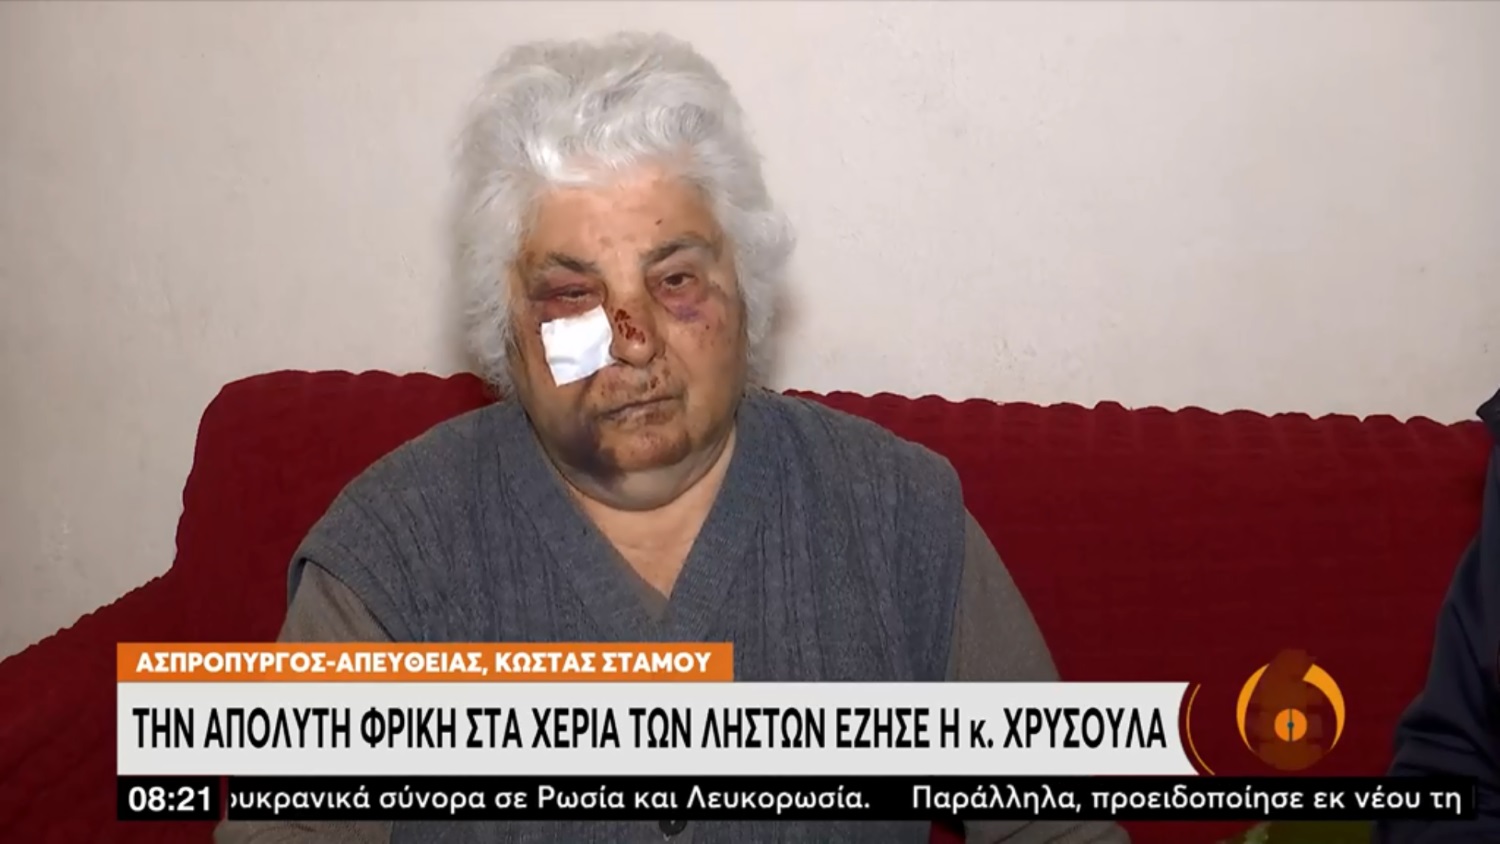 Συνελήφθη ο βασανιστής – ληστής που ξυλοφόρτωσε ηλικιωμένη μέσα στο σπίτι της